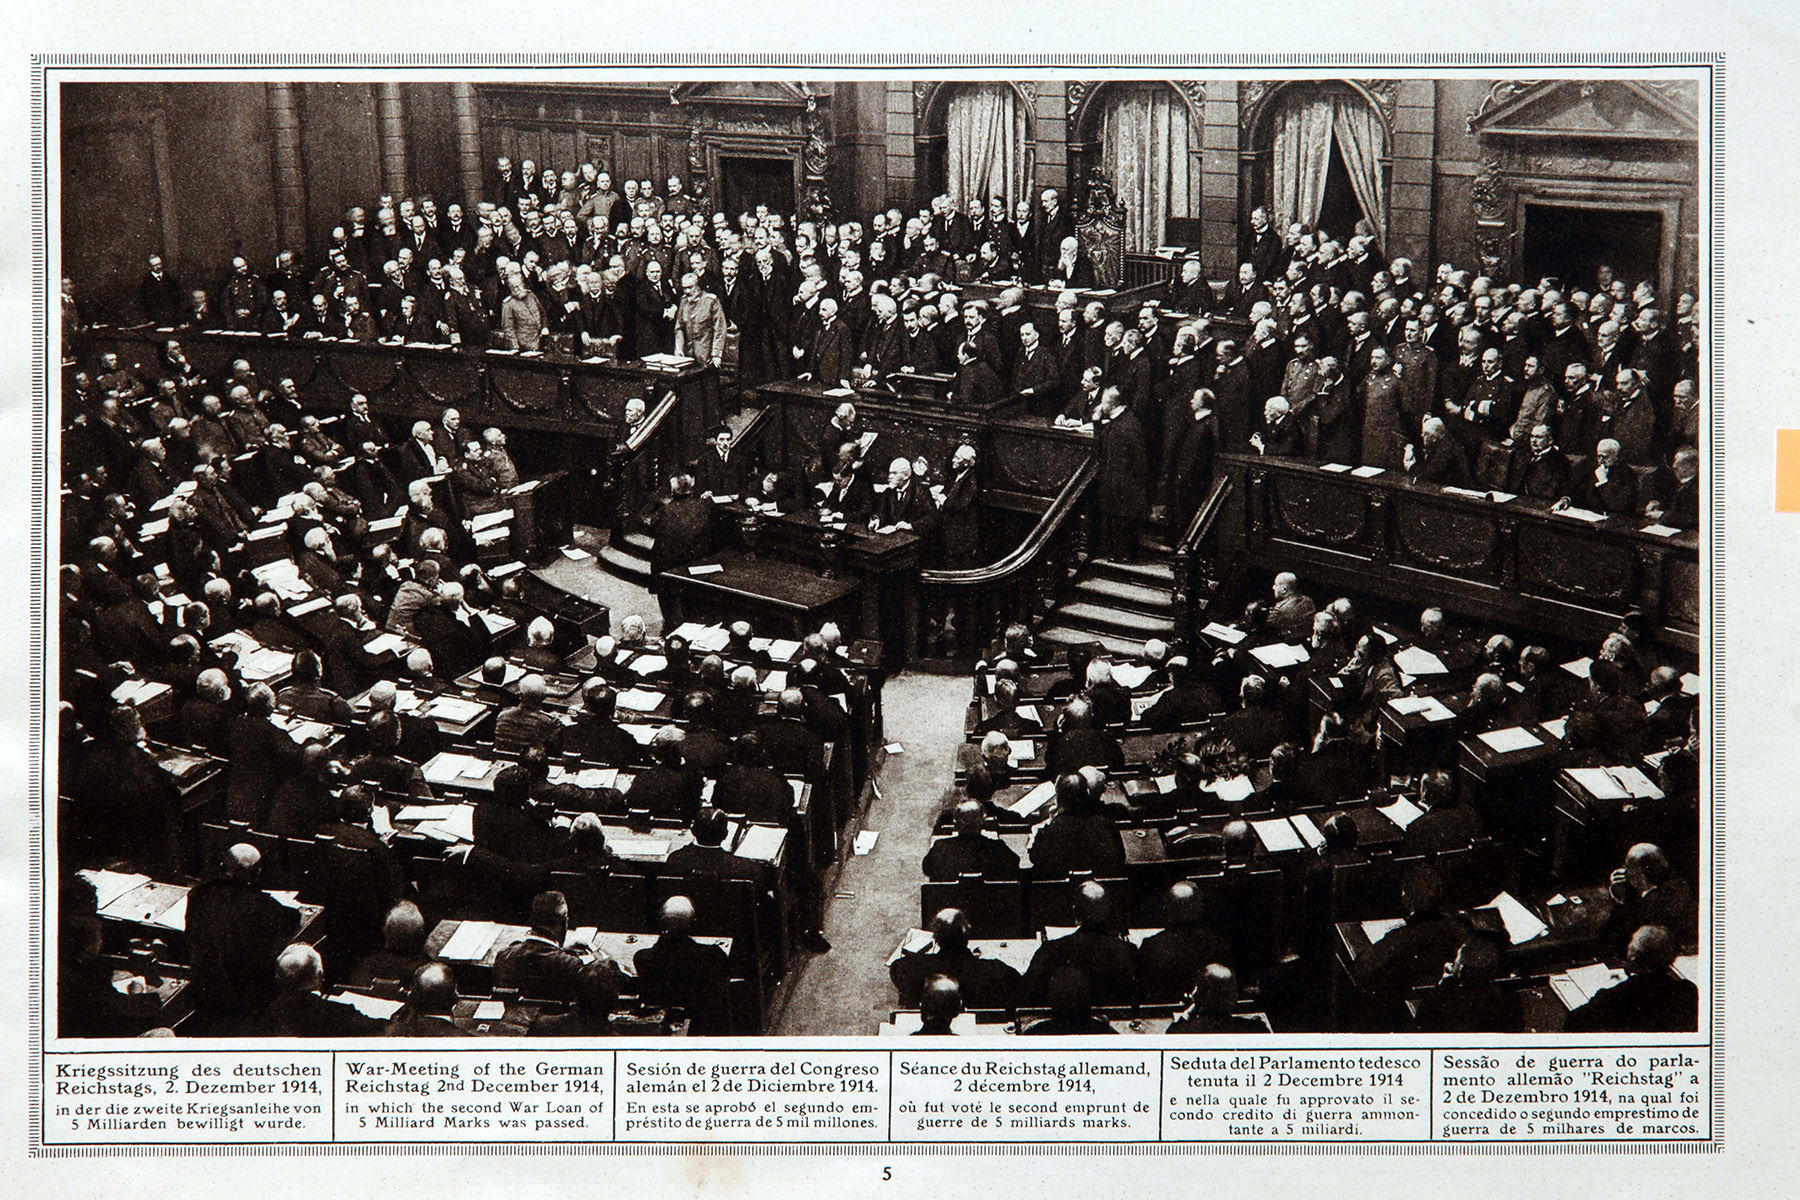 Seduta del parlamento tedesco tenuta il 2 dicembre 1914 e nella quale fu approvato il secondo credito di guerra ammontante a 5 miliardi